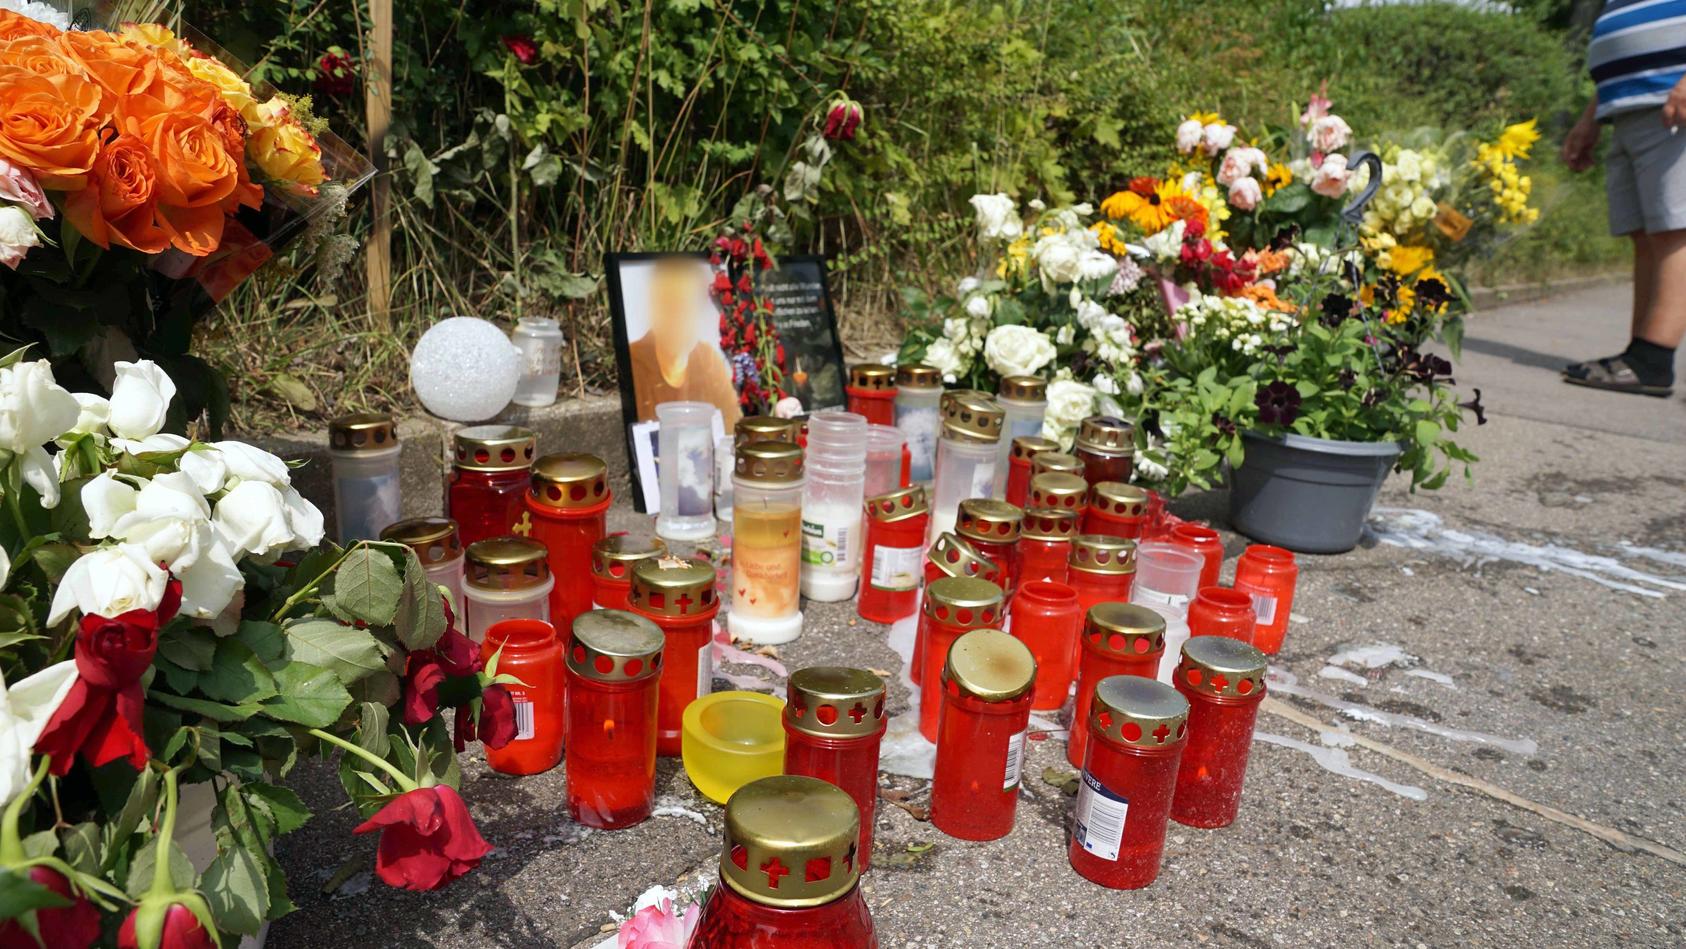 05.08.2019, Baden-Württemberg, Stuttgart: Kerzen und Blumen stehen am Tatort um ein Porträt des dort getöteten Mannes herum. Die Bestürzung ist auch Tage nach dem Schwert-Angriff in Stuttgart weiterhin groß. Der inzwischen in Untersuchungshaft sitzen